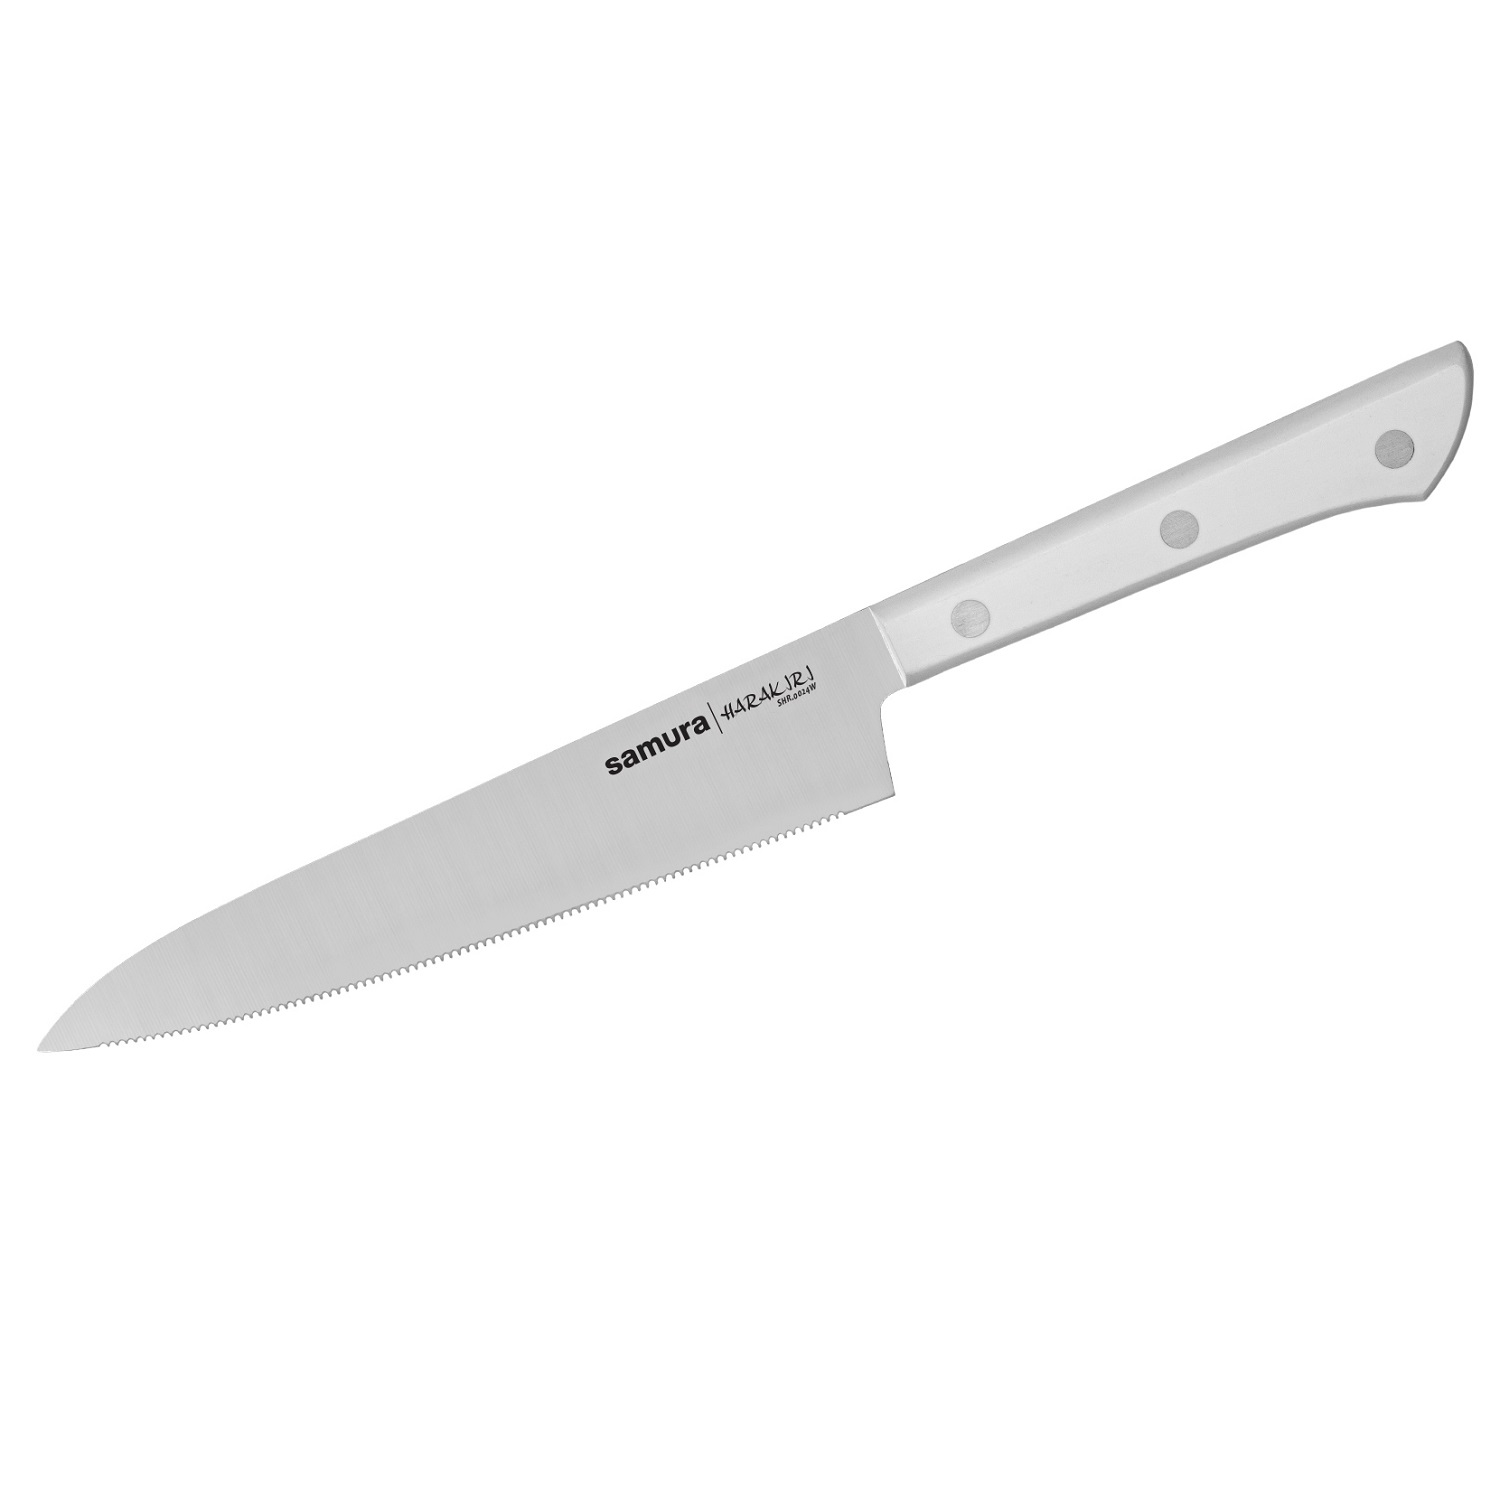 Нож Samura универсальный Harakiri серрейтор, 15 см, кор.-стойк. сталь, ABS пластик